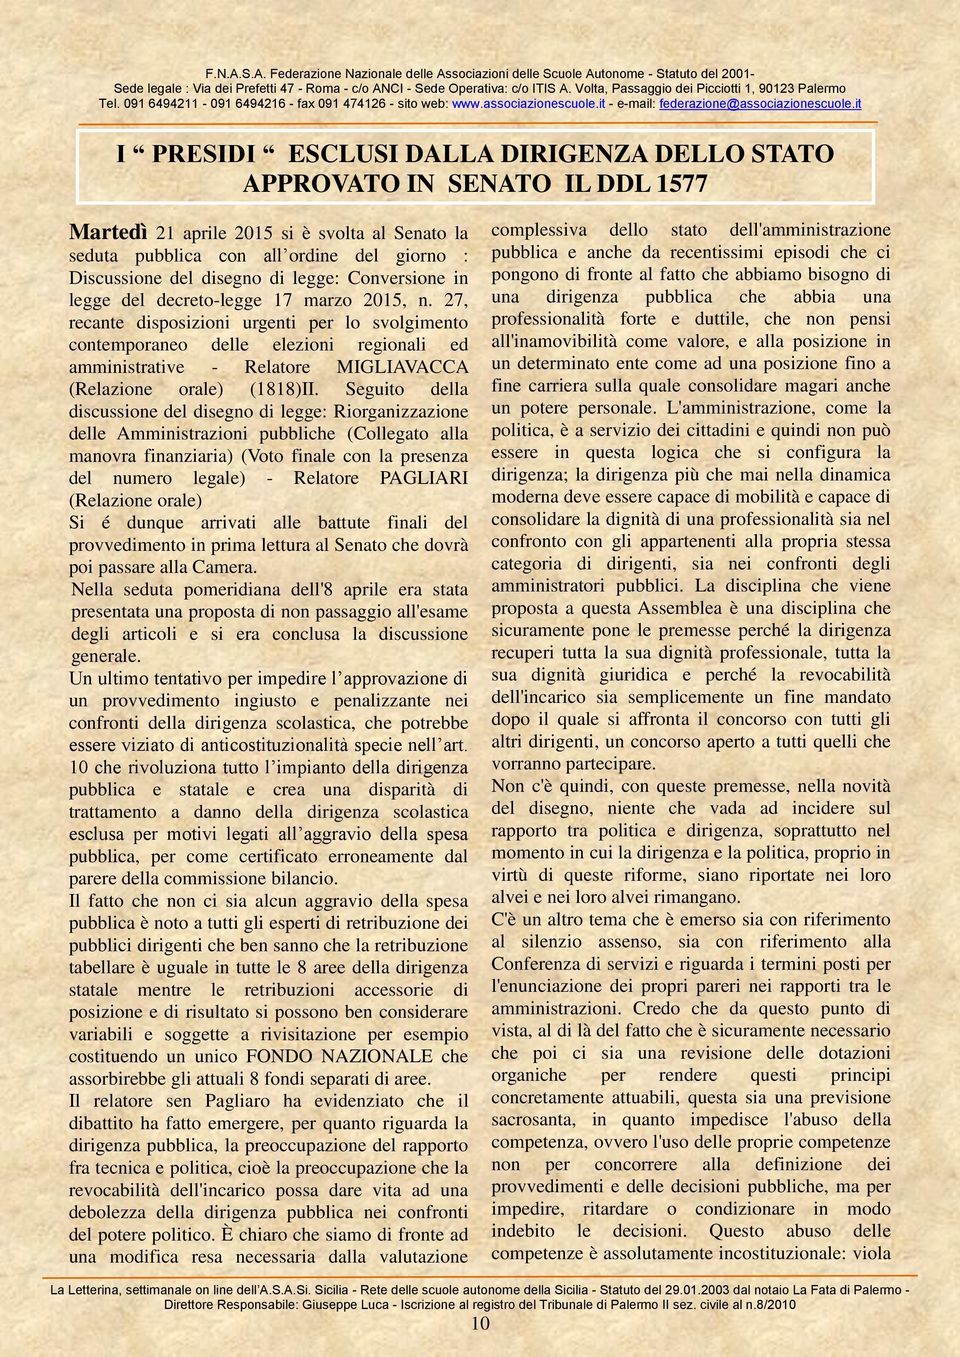 27, recante disposizioni urgenti per lo svolgimento contemporaneo delle elezioni regionali ed amministrative - Relatore MIGLIAVACCA (Relazione orale) (1818)II.